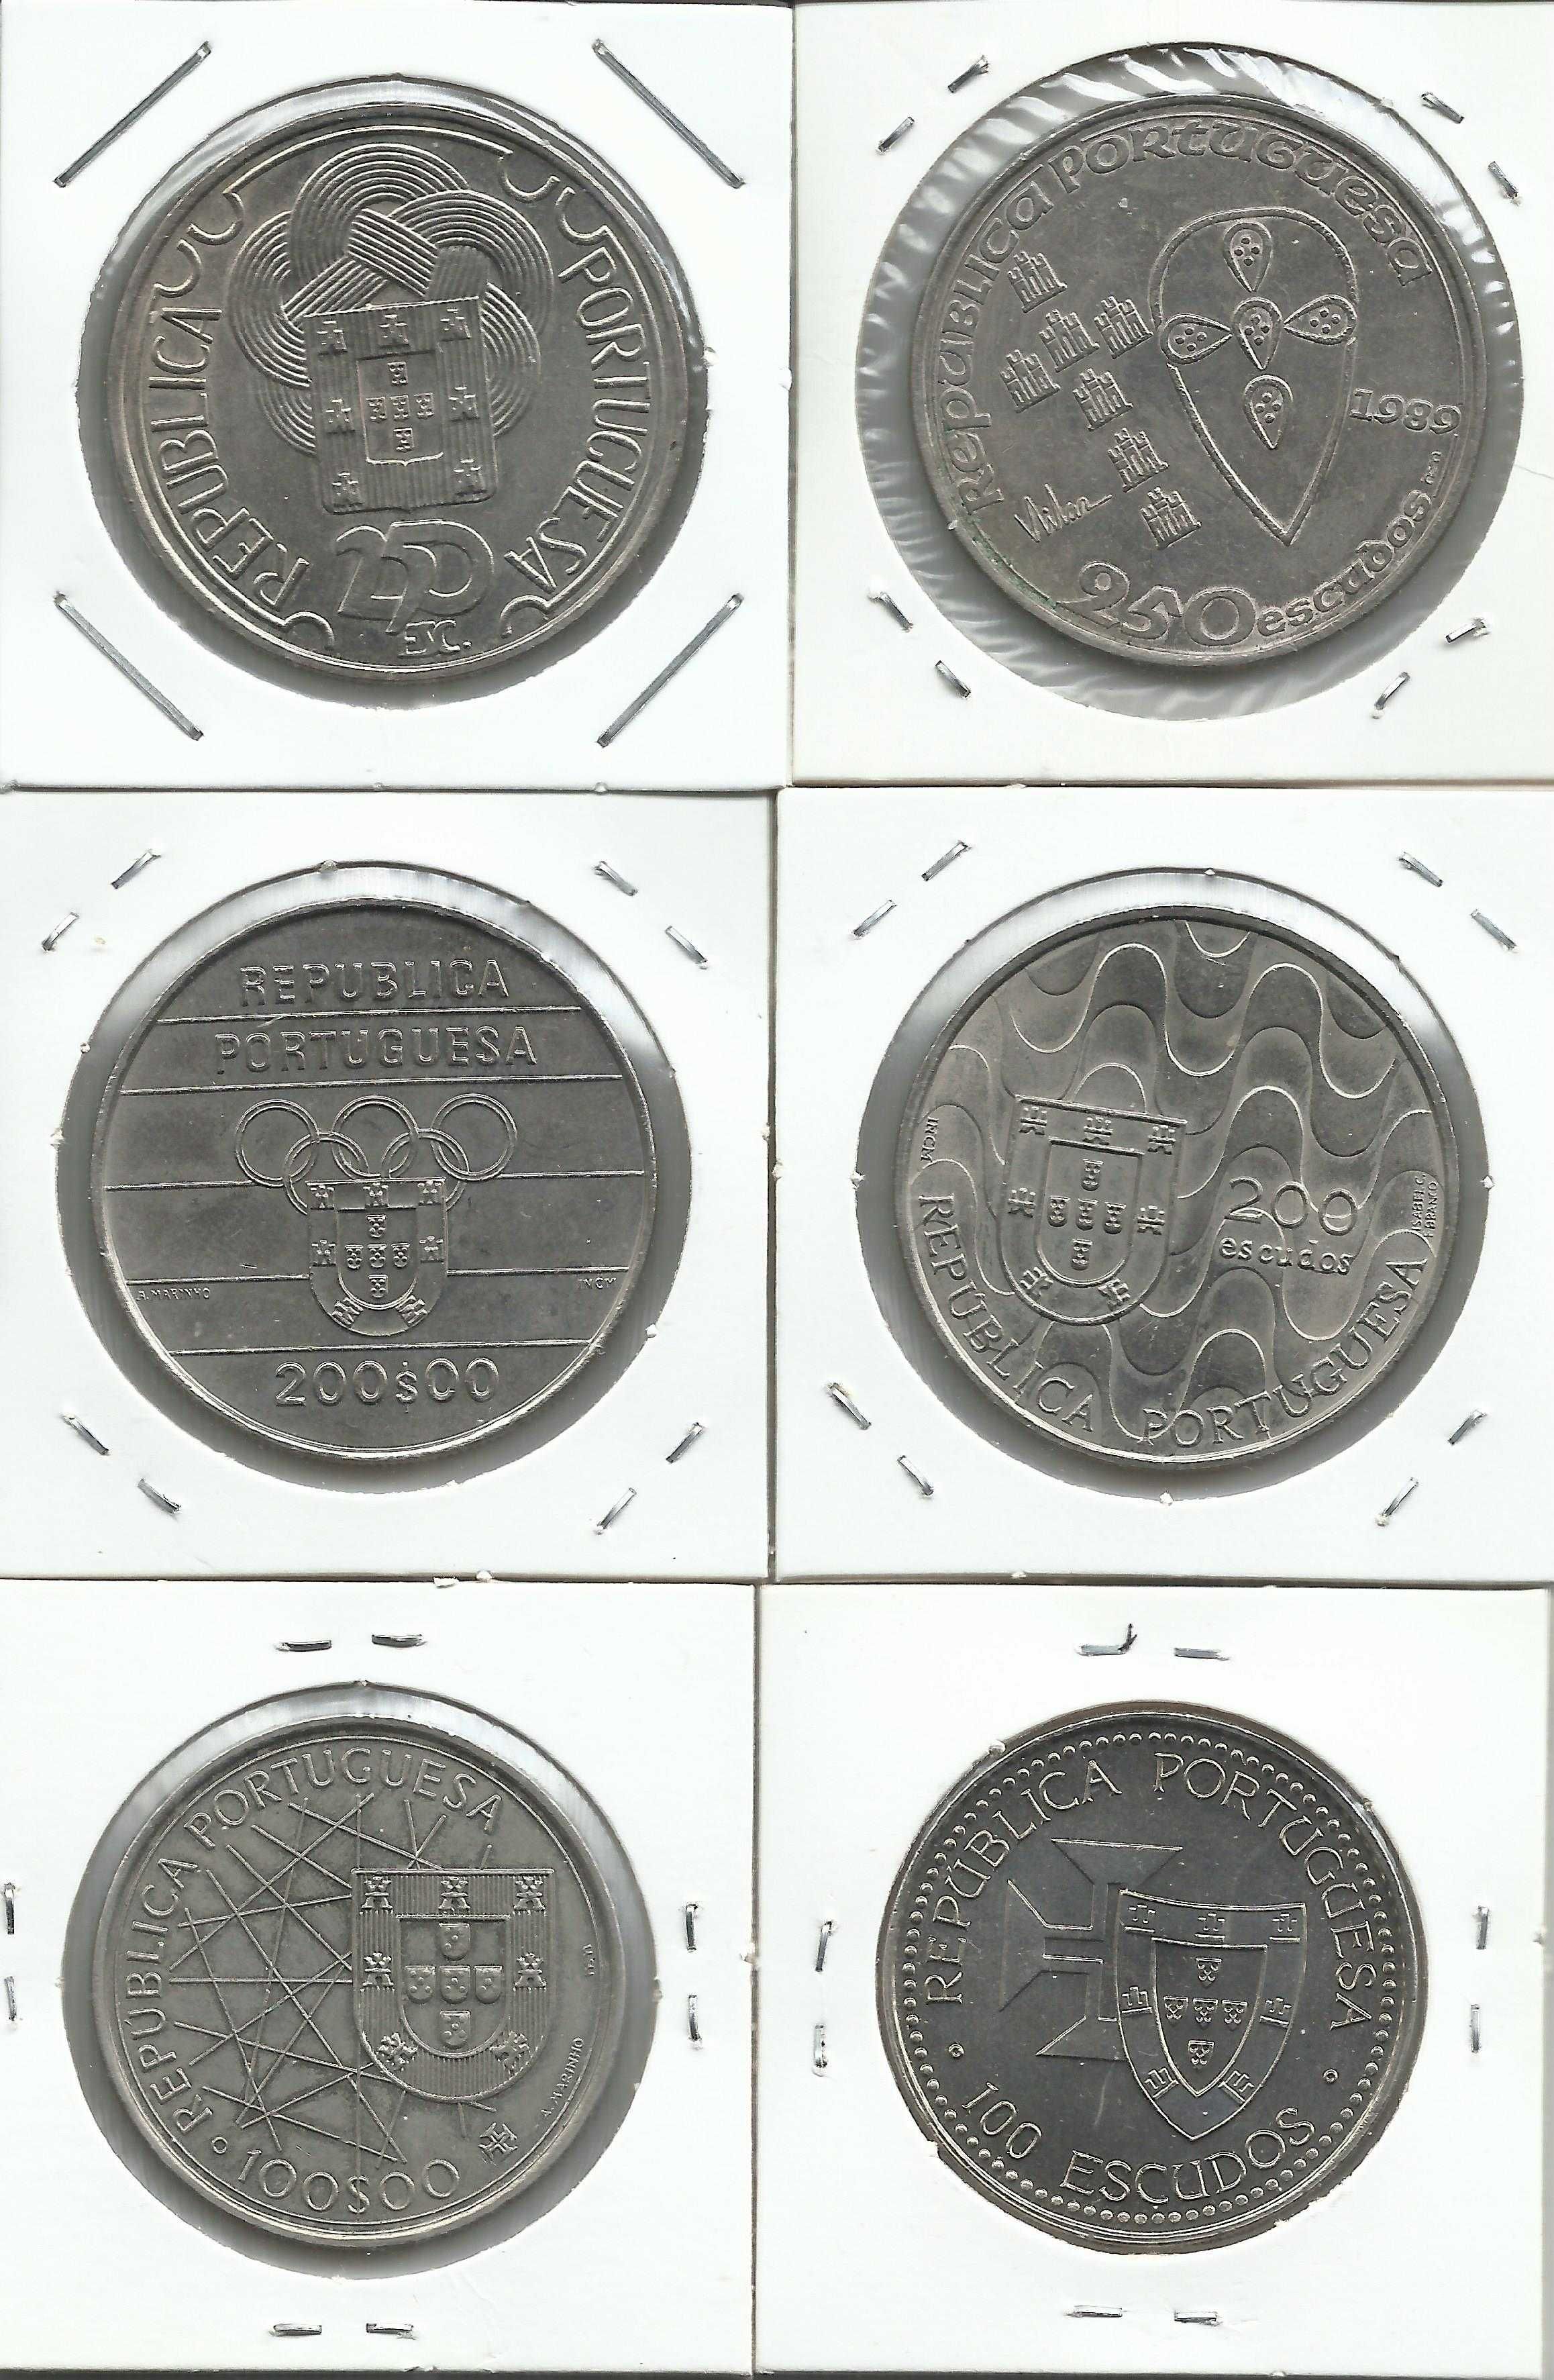 6 moedas portuguesas comemorativas - 2 X 100$, 2 X200$ e 2 X250$